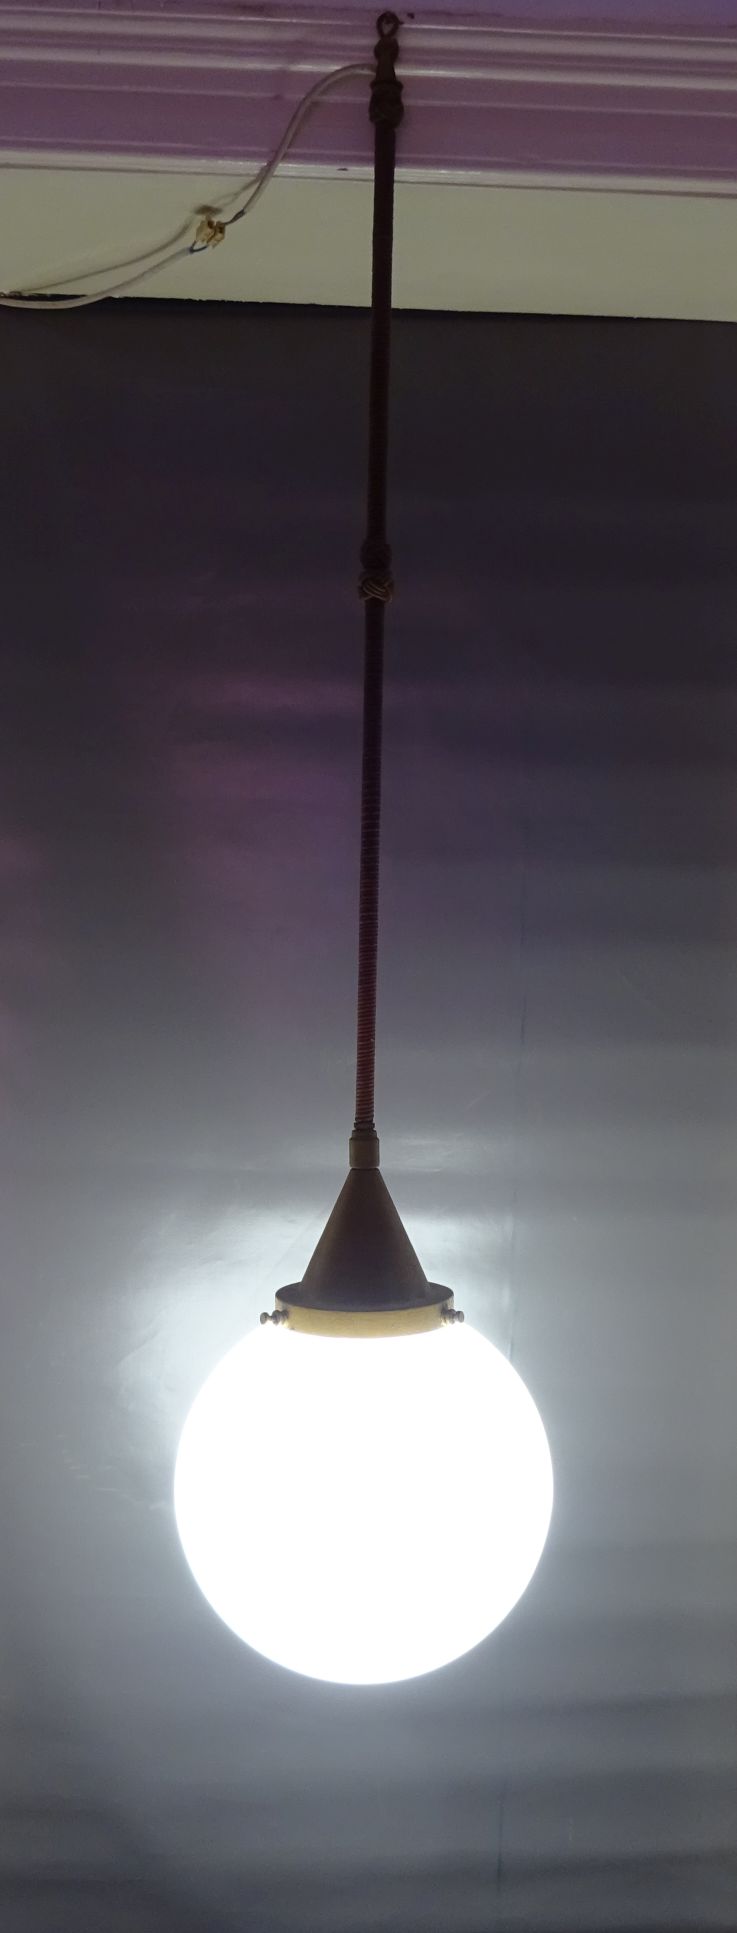 Pendelleuchte Bauhaus alte Kugellampe XL Loft Leuchte E40 Deckenlampe